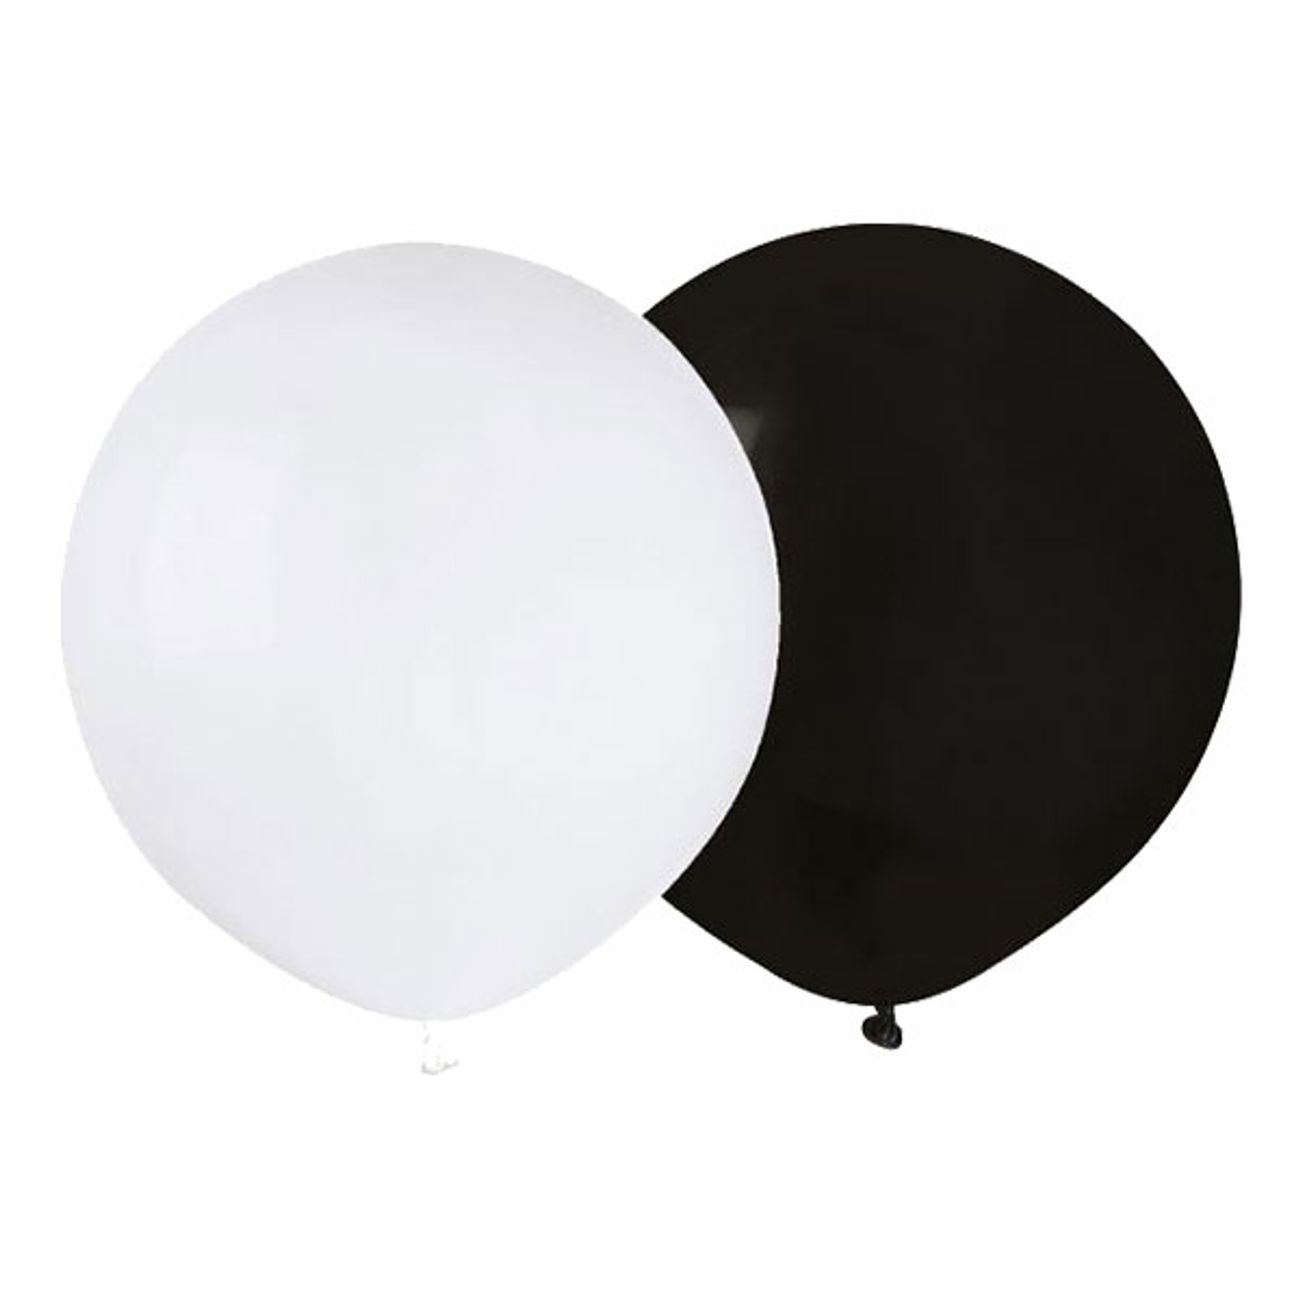 ballongkombo-svartvit-runda-stora-1